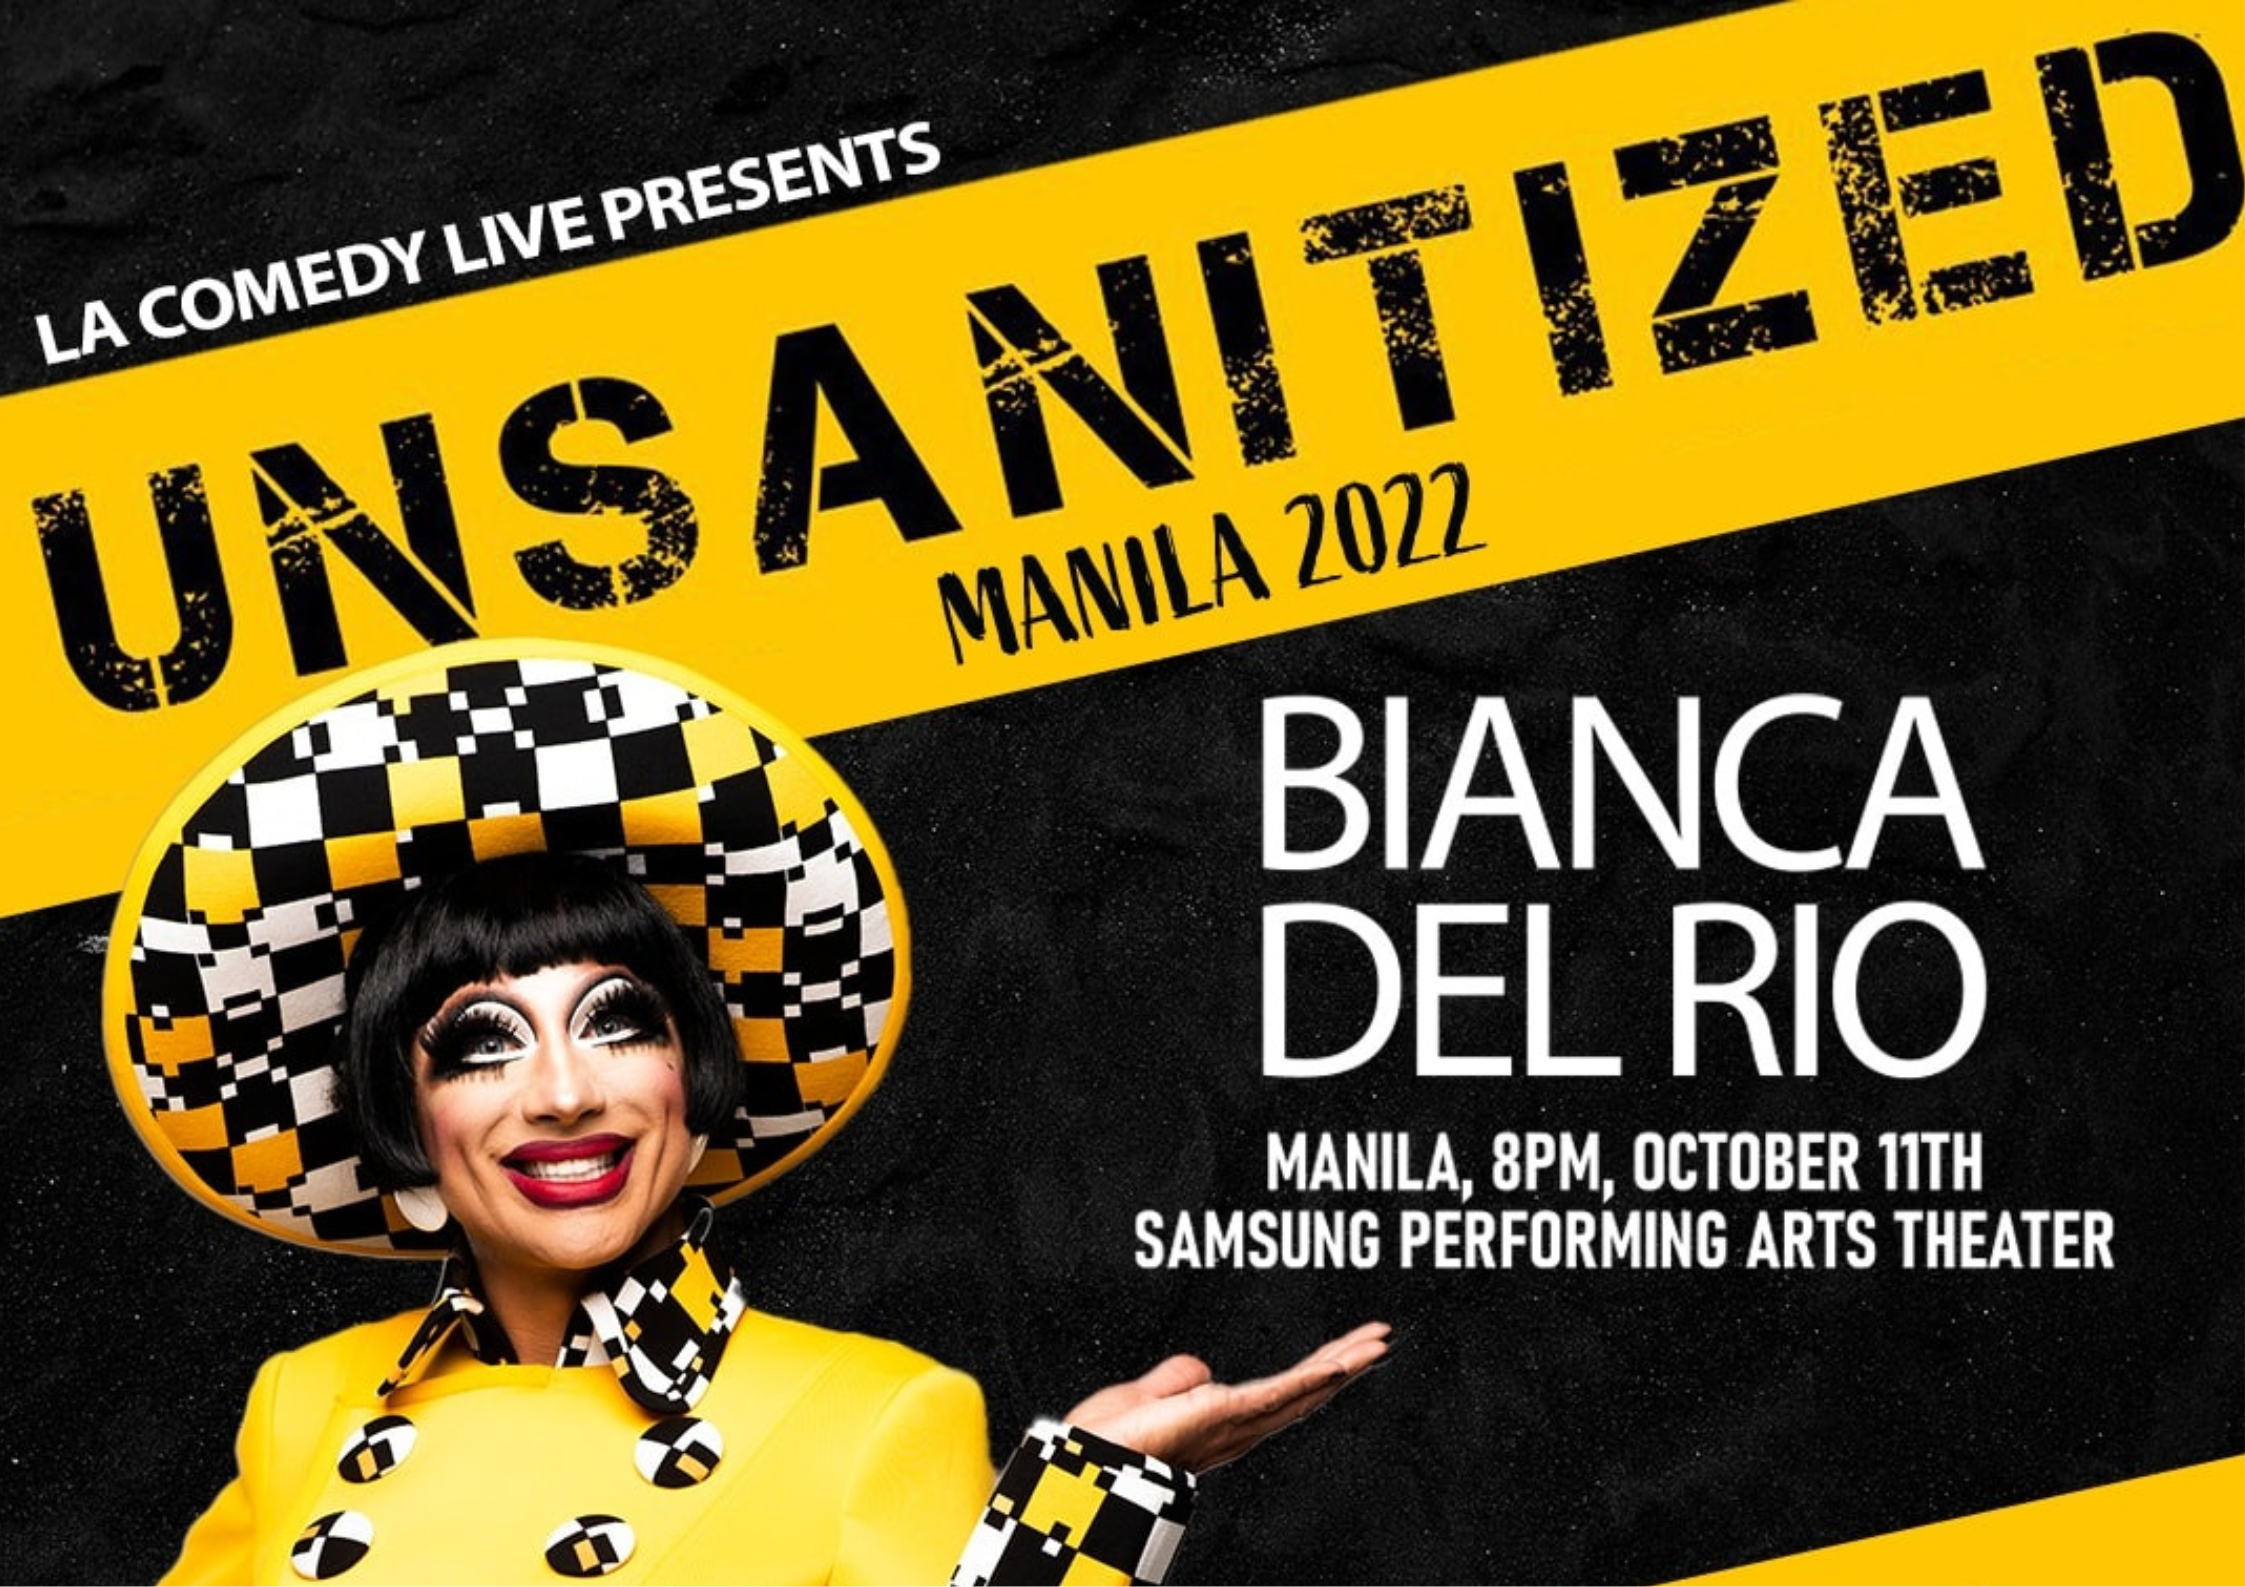 Bianca del Rio Manila 2022